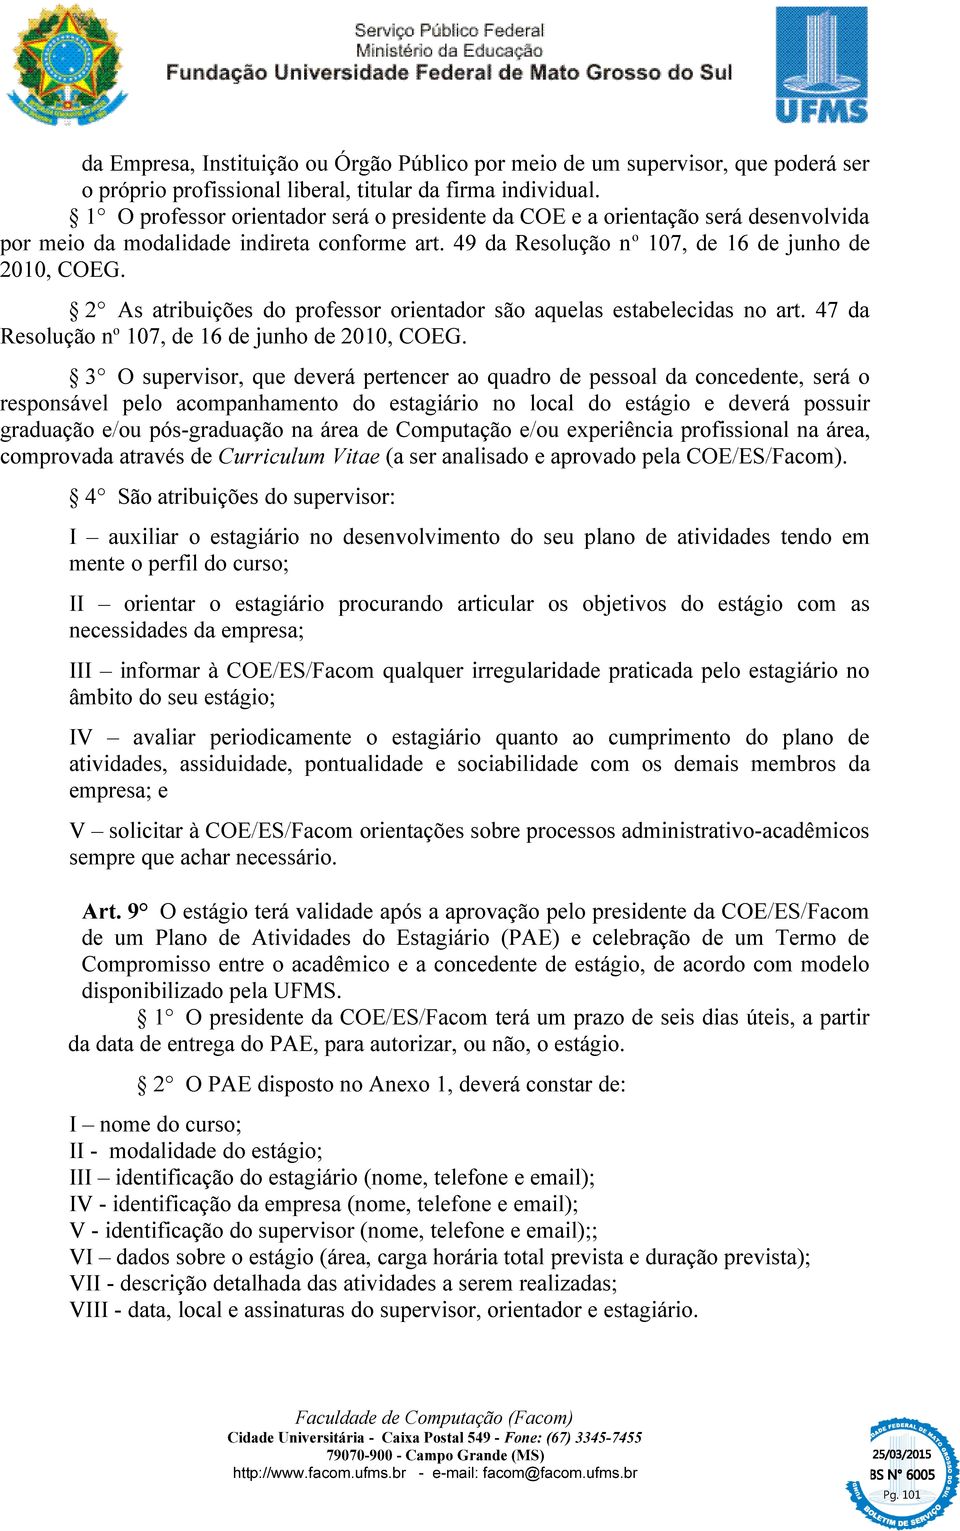 2 As atribuições do professor orientador são aquelas estabelecidas no art. 47 da Resolução n o 107, de 16 de junho de 2010, COEG.